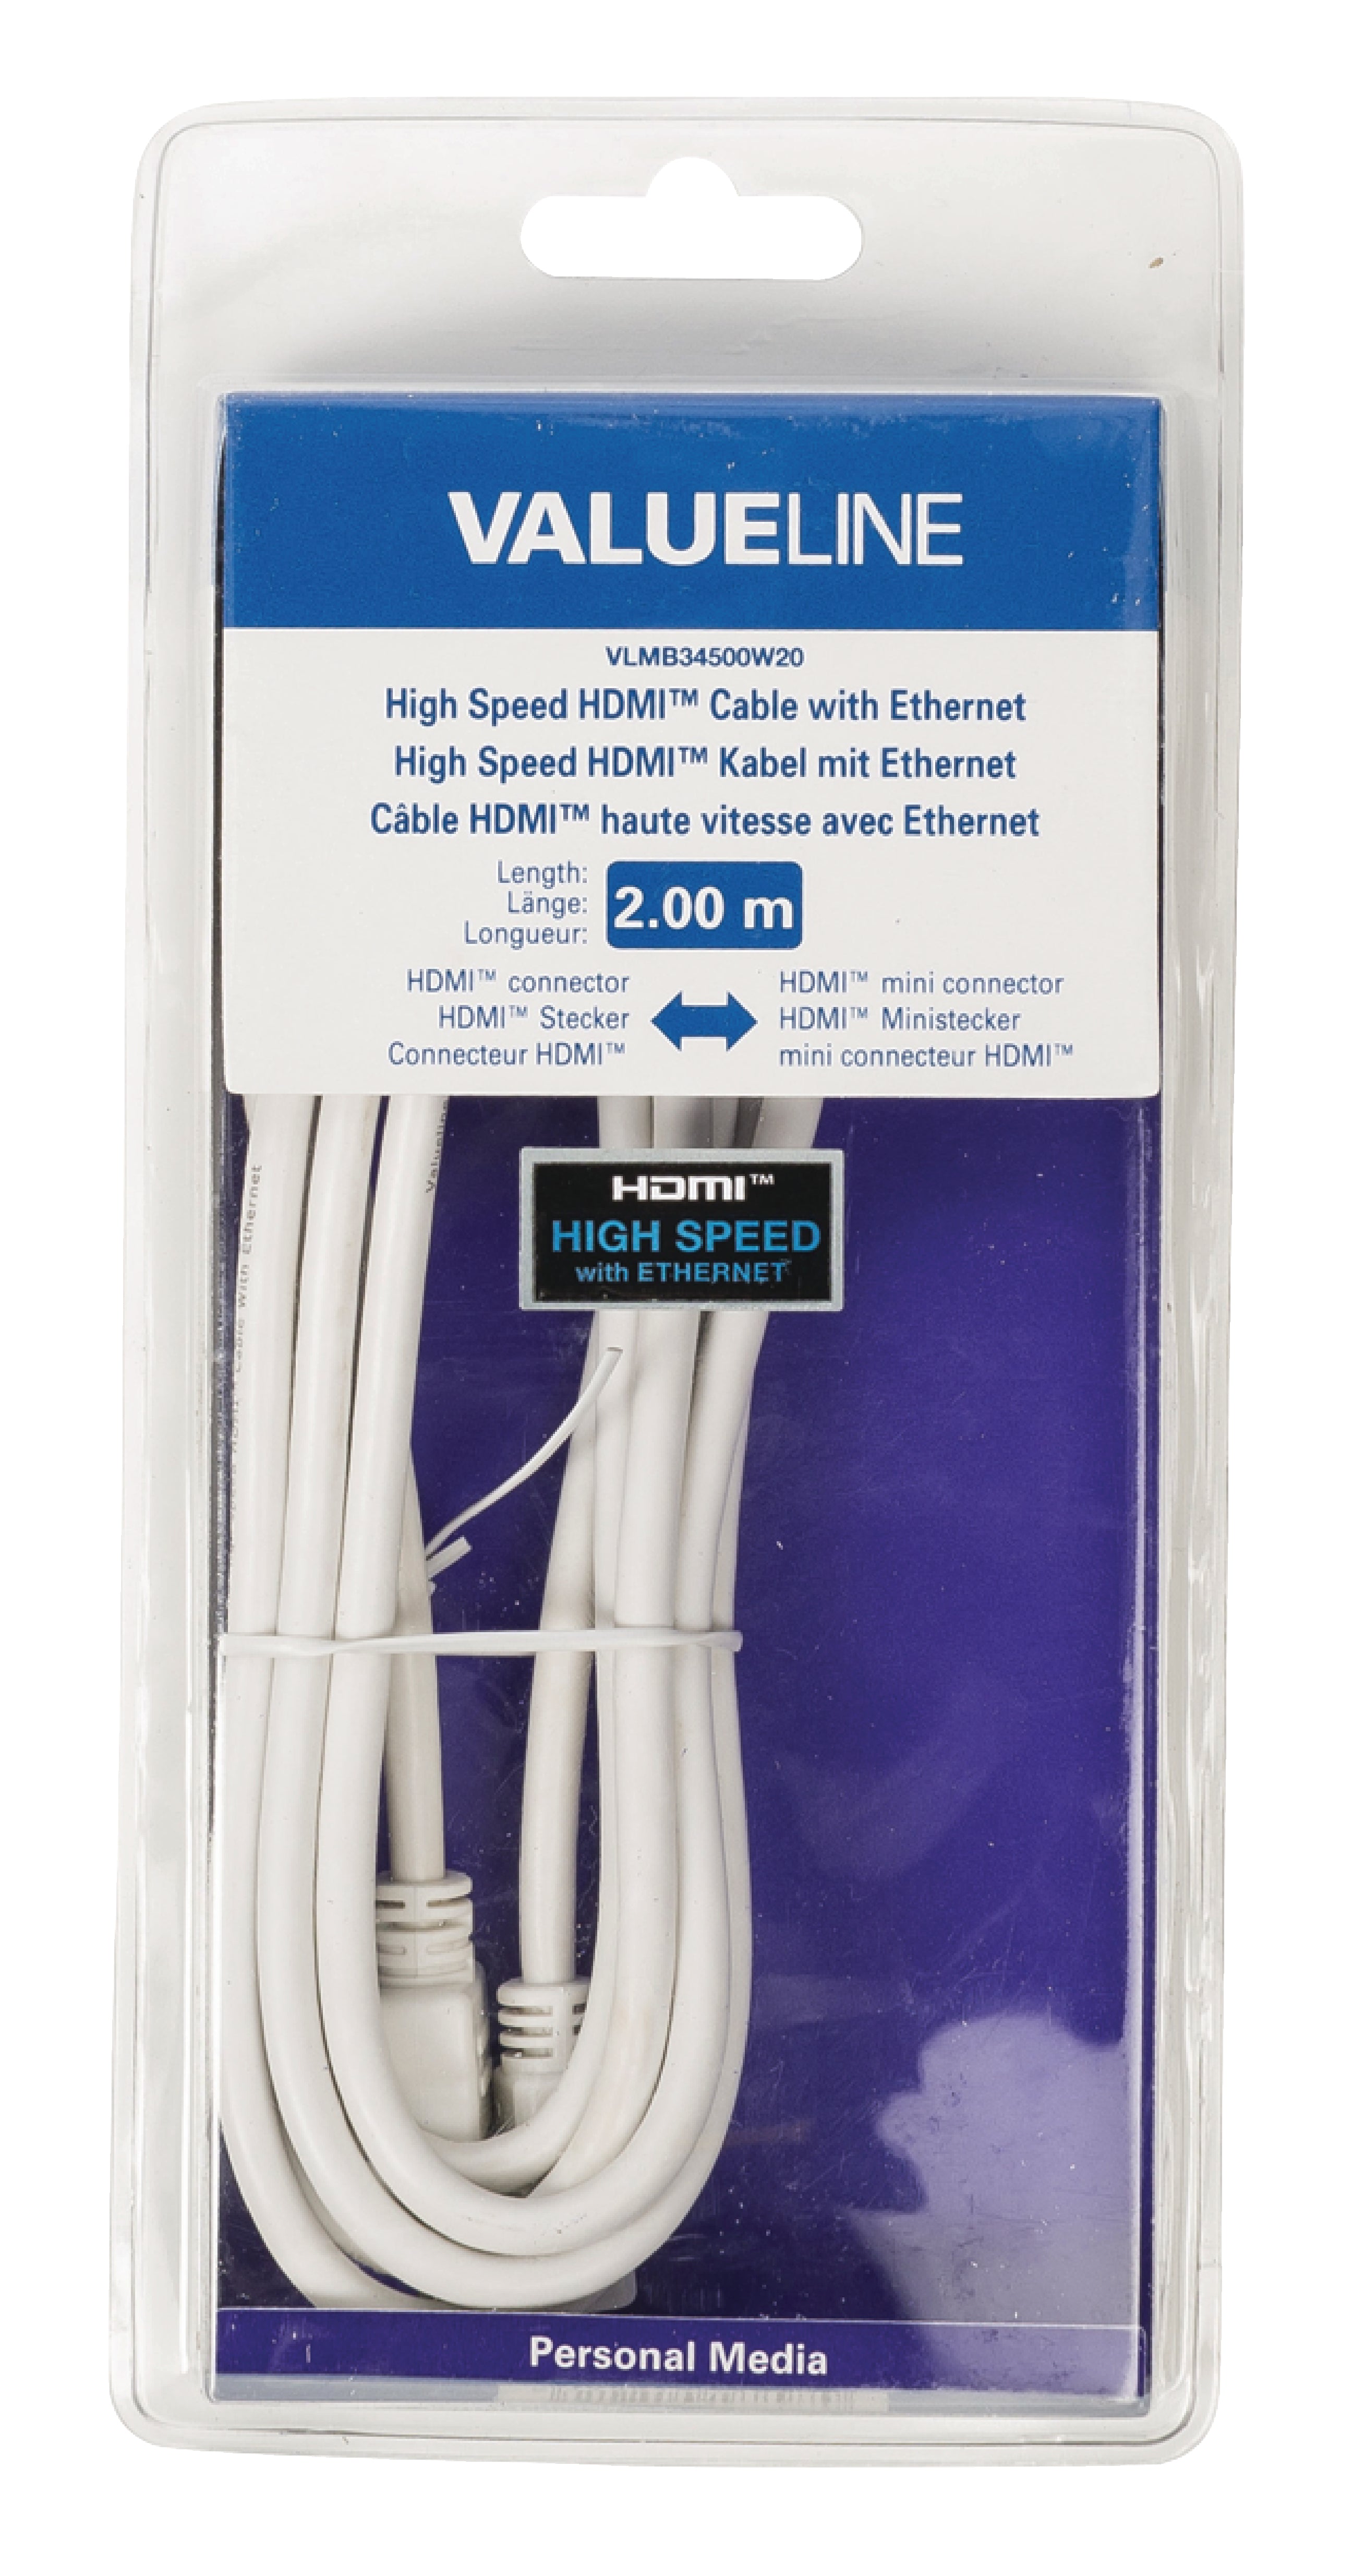 High Speed HDMI Kabel mit Ethernet HDMI Anschluss - HDMI Mini Stecker 2.00 m Weiss